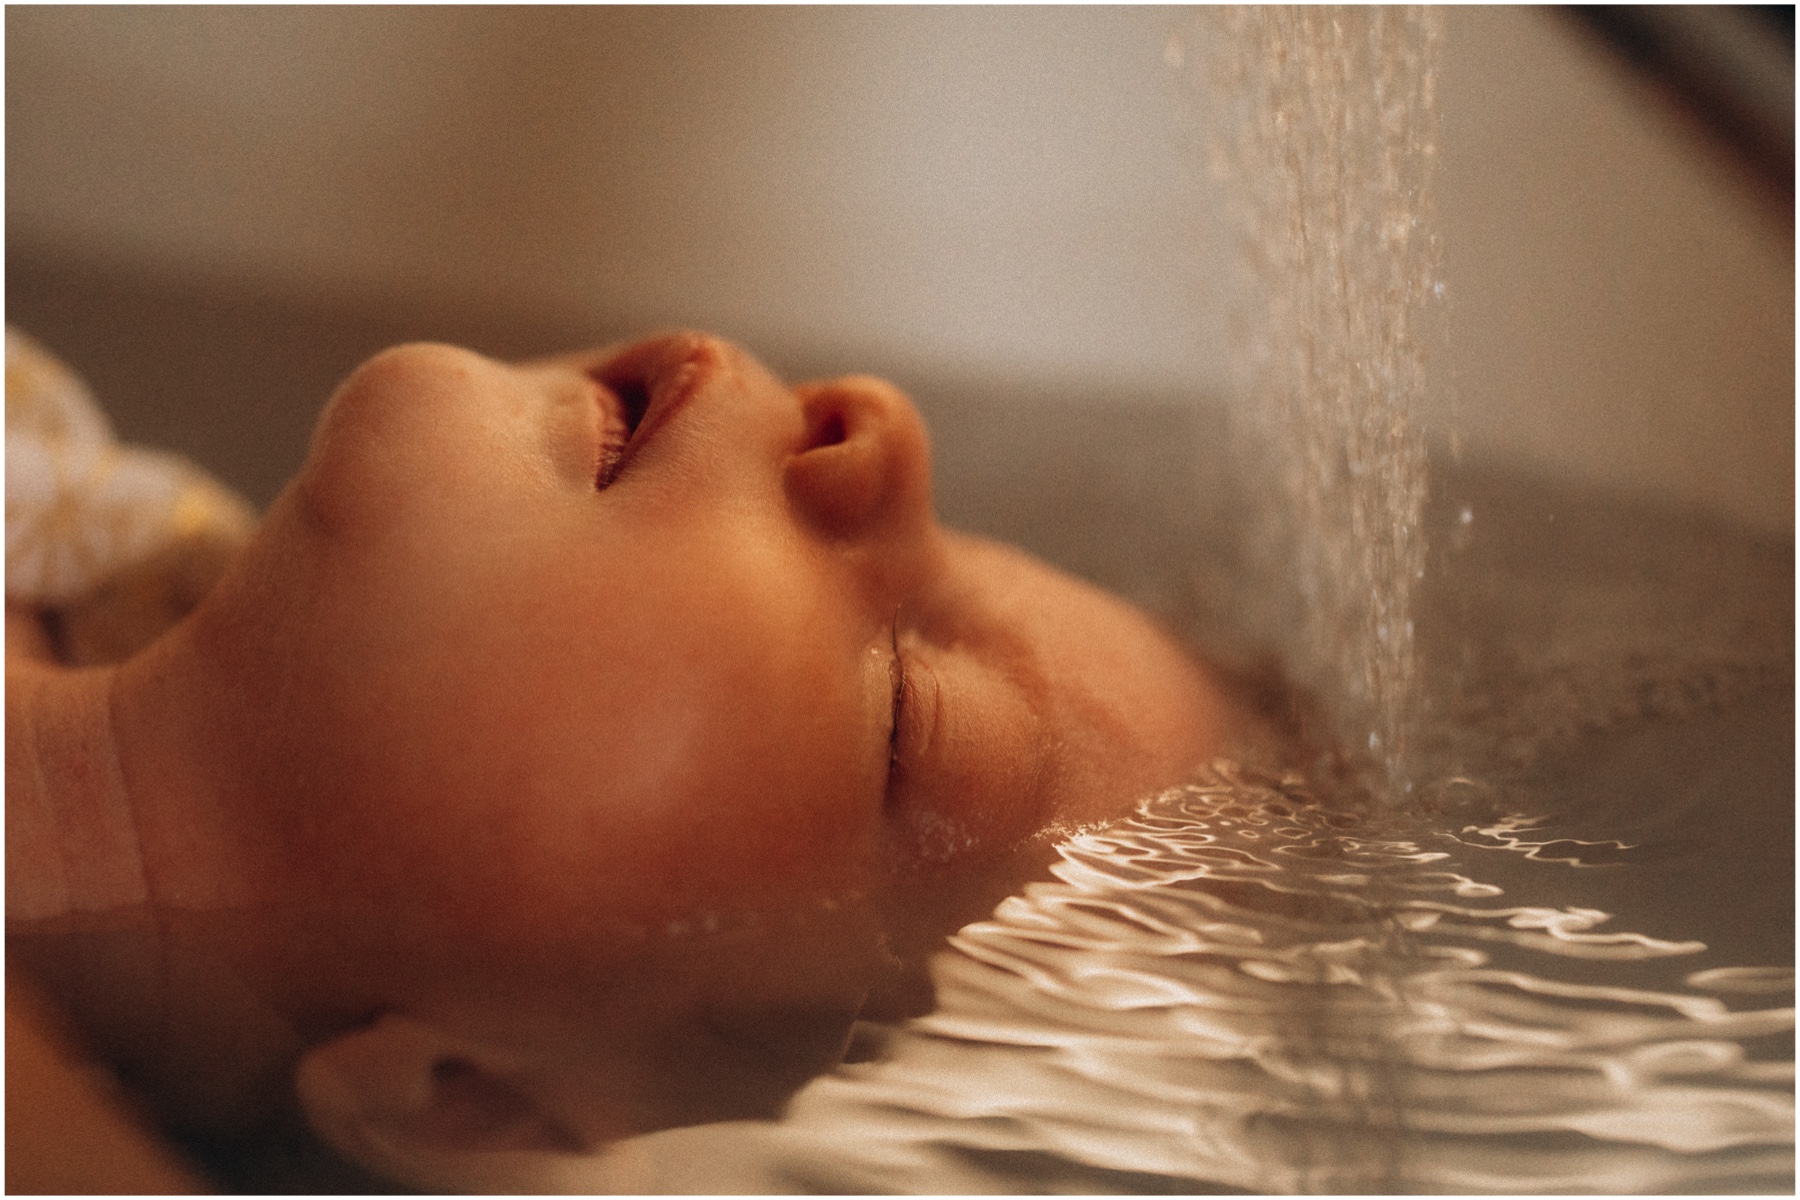 Bébé dans l'eau lors d'un Thalasso Thérapeutique Bain Bébé photographié par grain de clic.